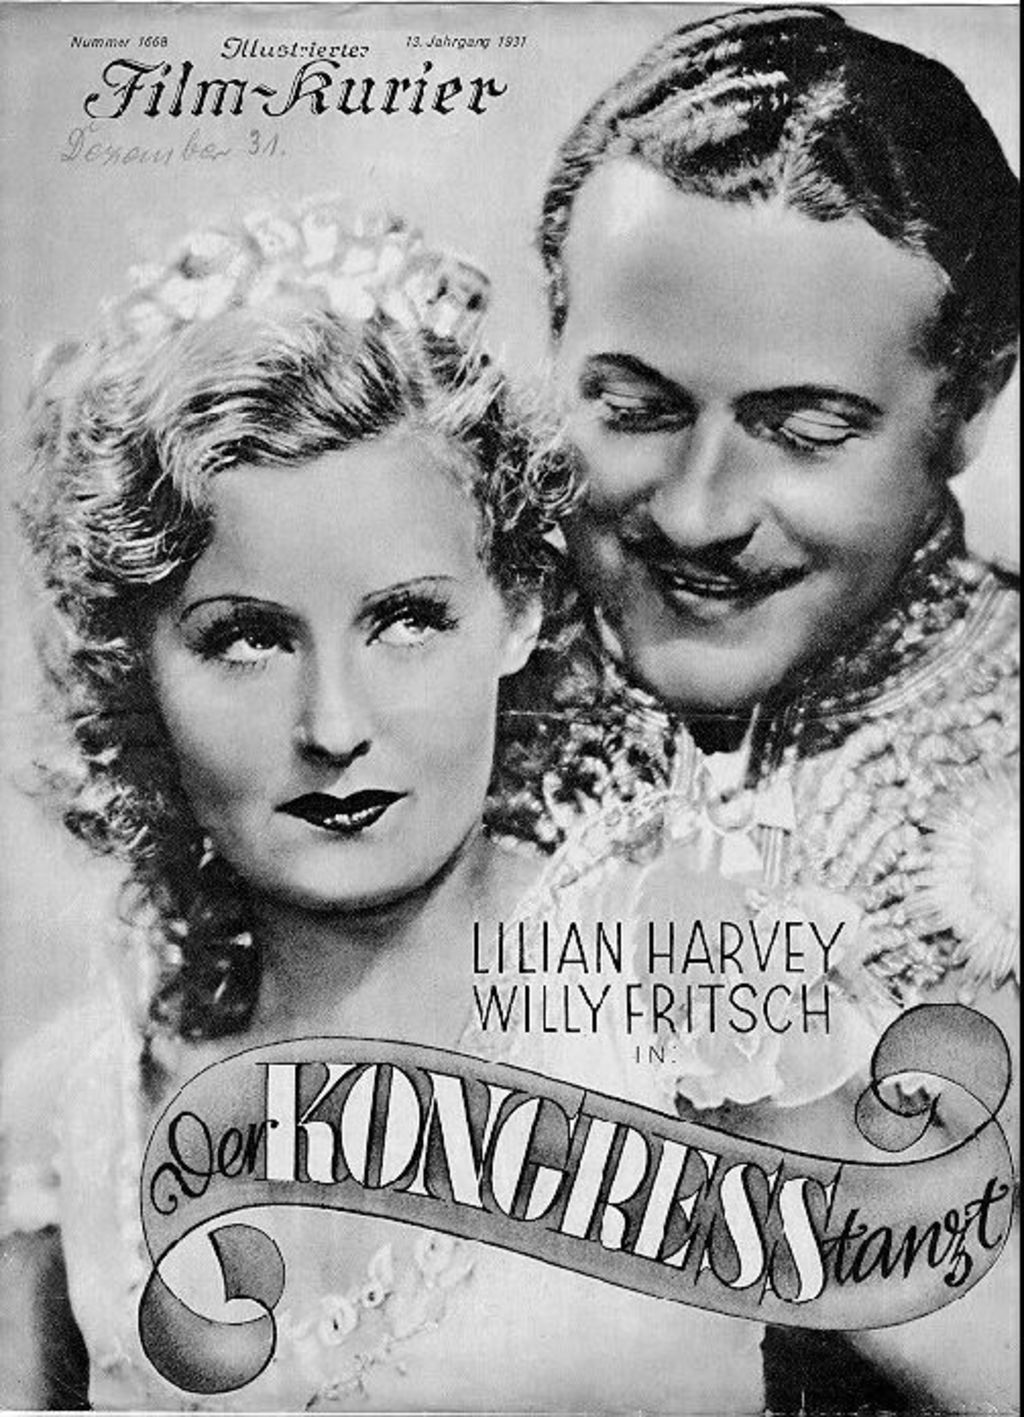 Plakat: Der Kongreß tanzt, 1931